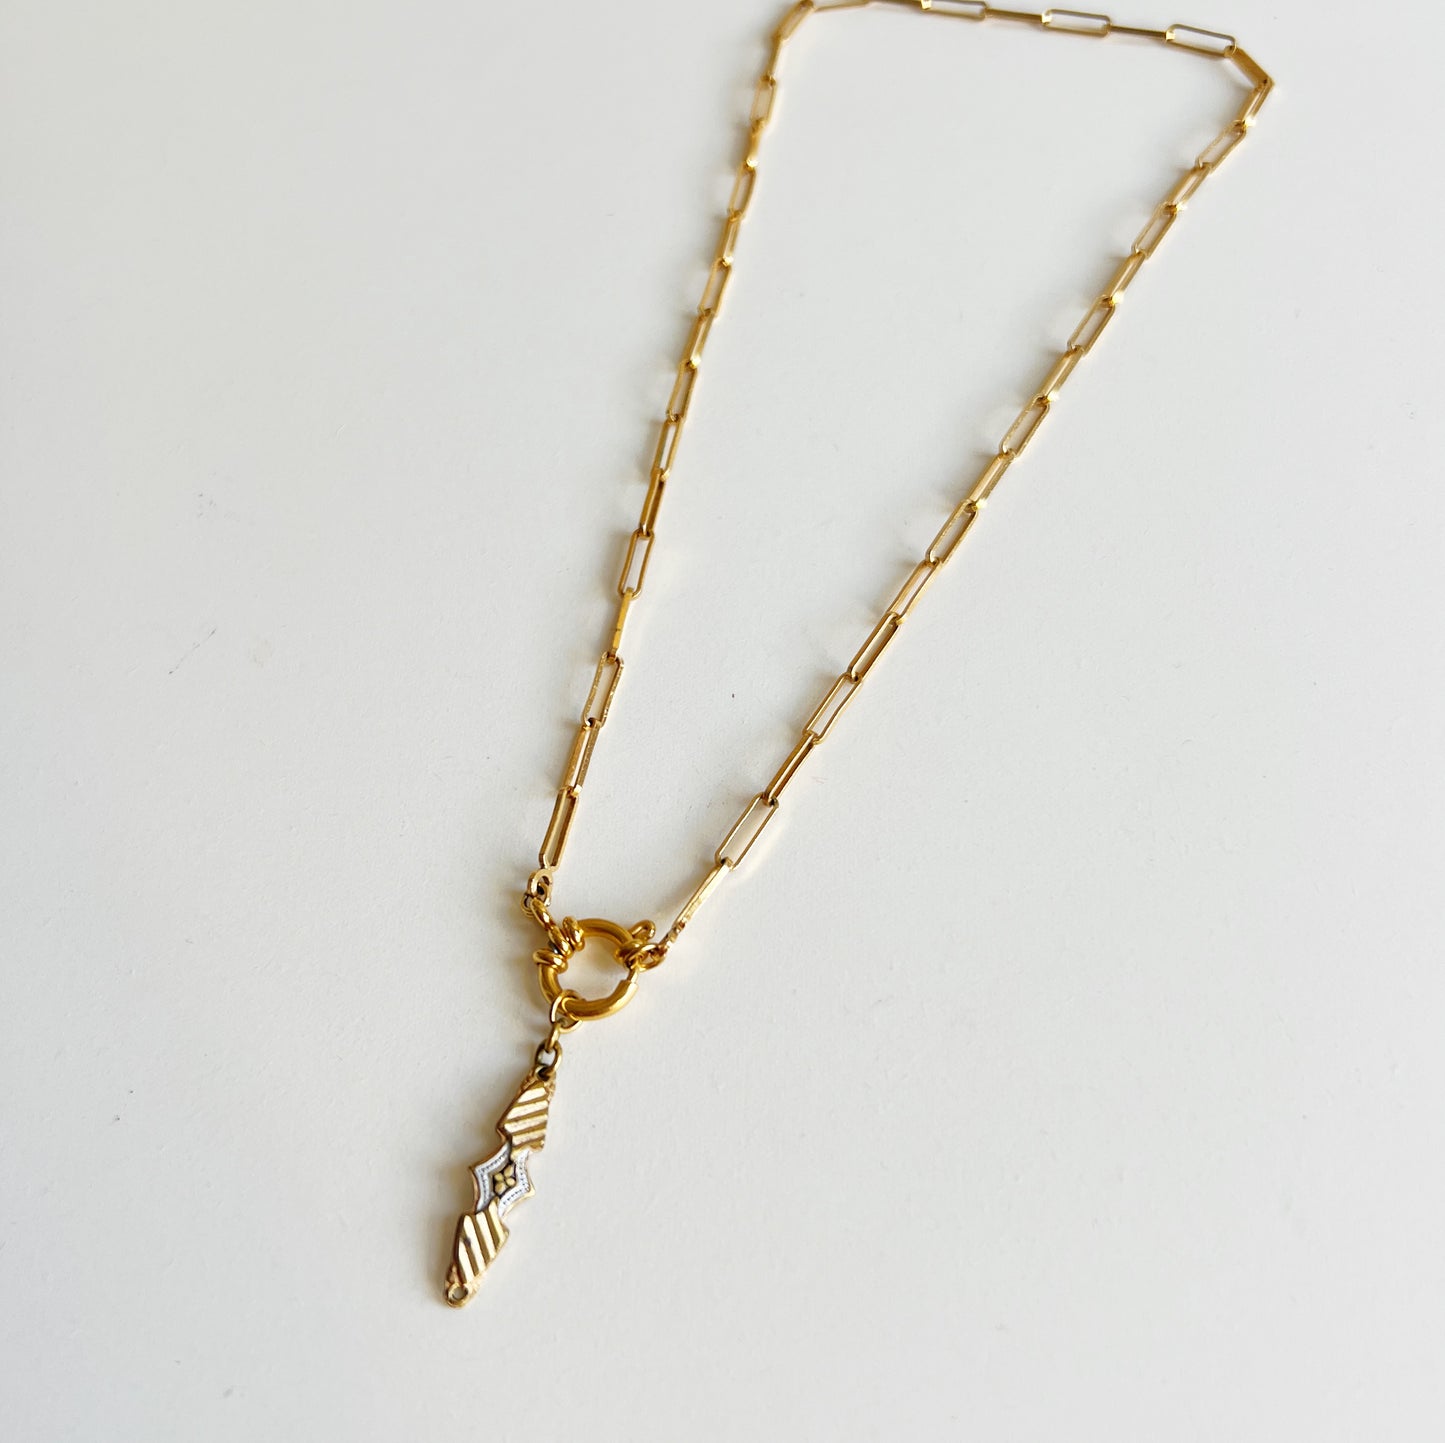 Vintage Toledo gold necklace